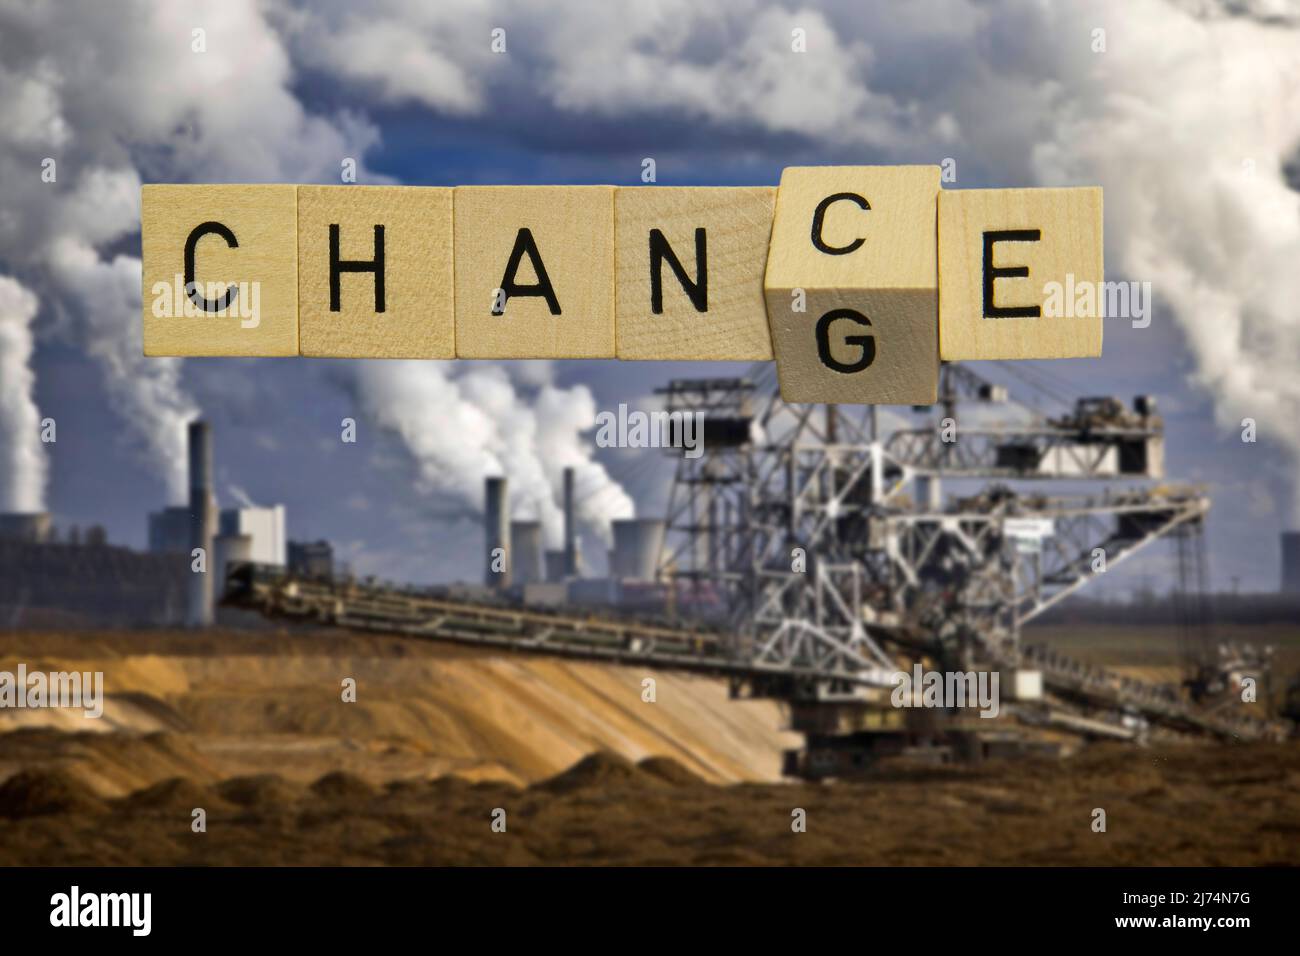 Chance ou changement, image symbolique du changement de la politique climatique et de l'élimination progressive de l'extraction du lignite, composition, Allemagne, Rhénanie-du-Nord-Westphalie, Banque D'Images